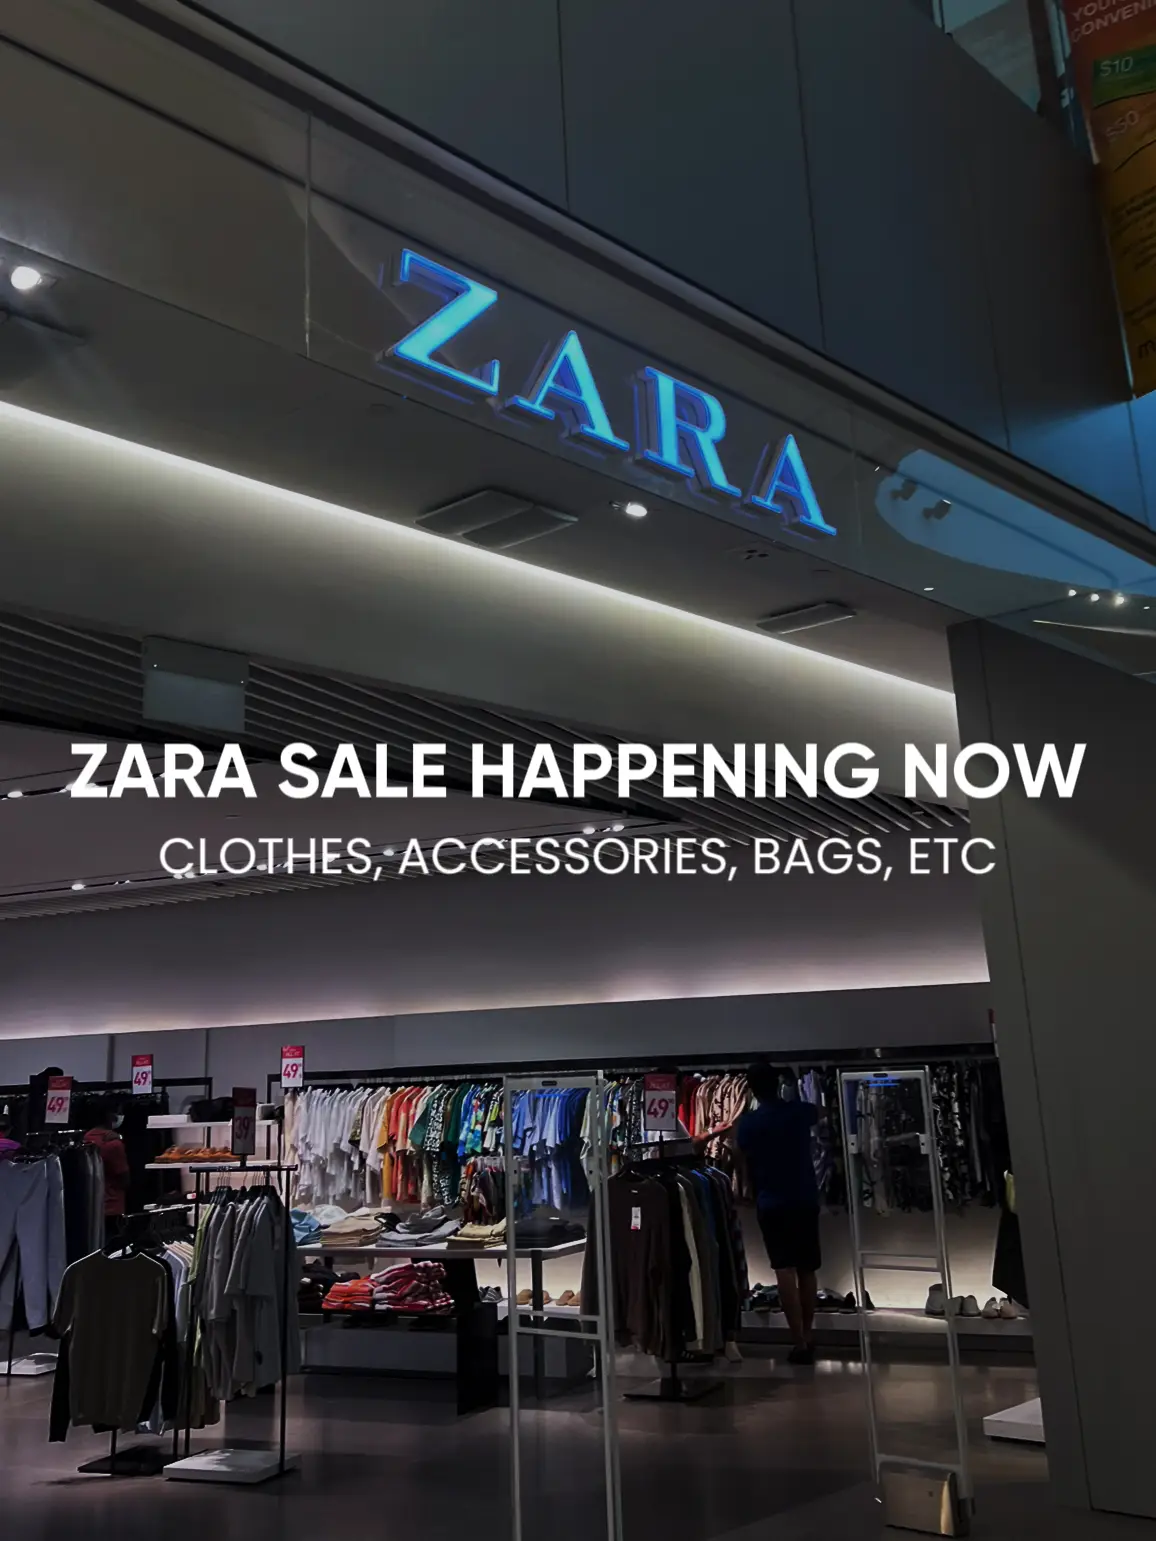 I Shopped The Zara Sale For You